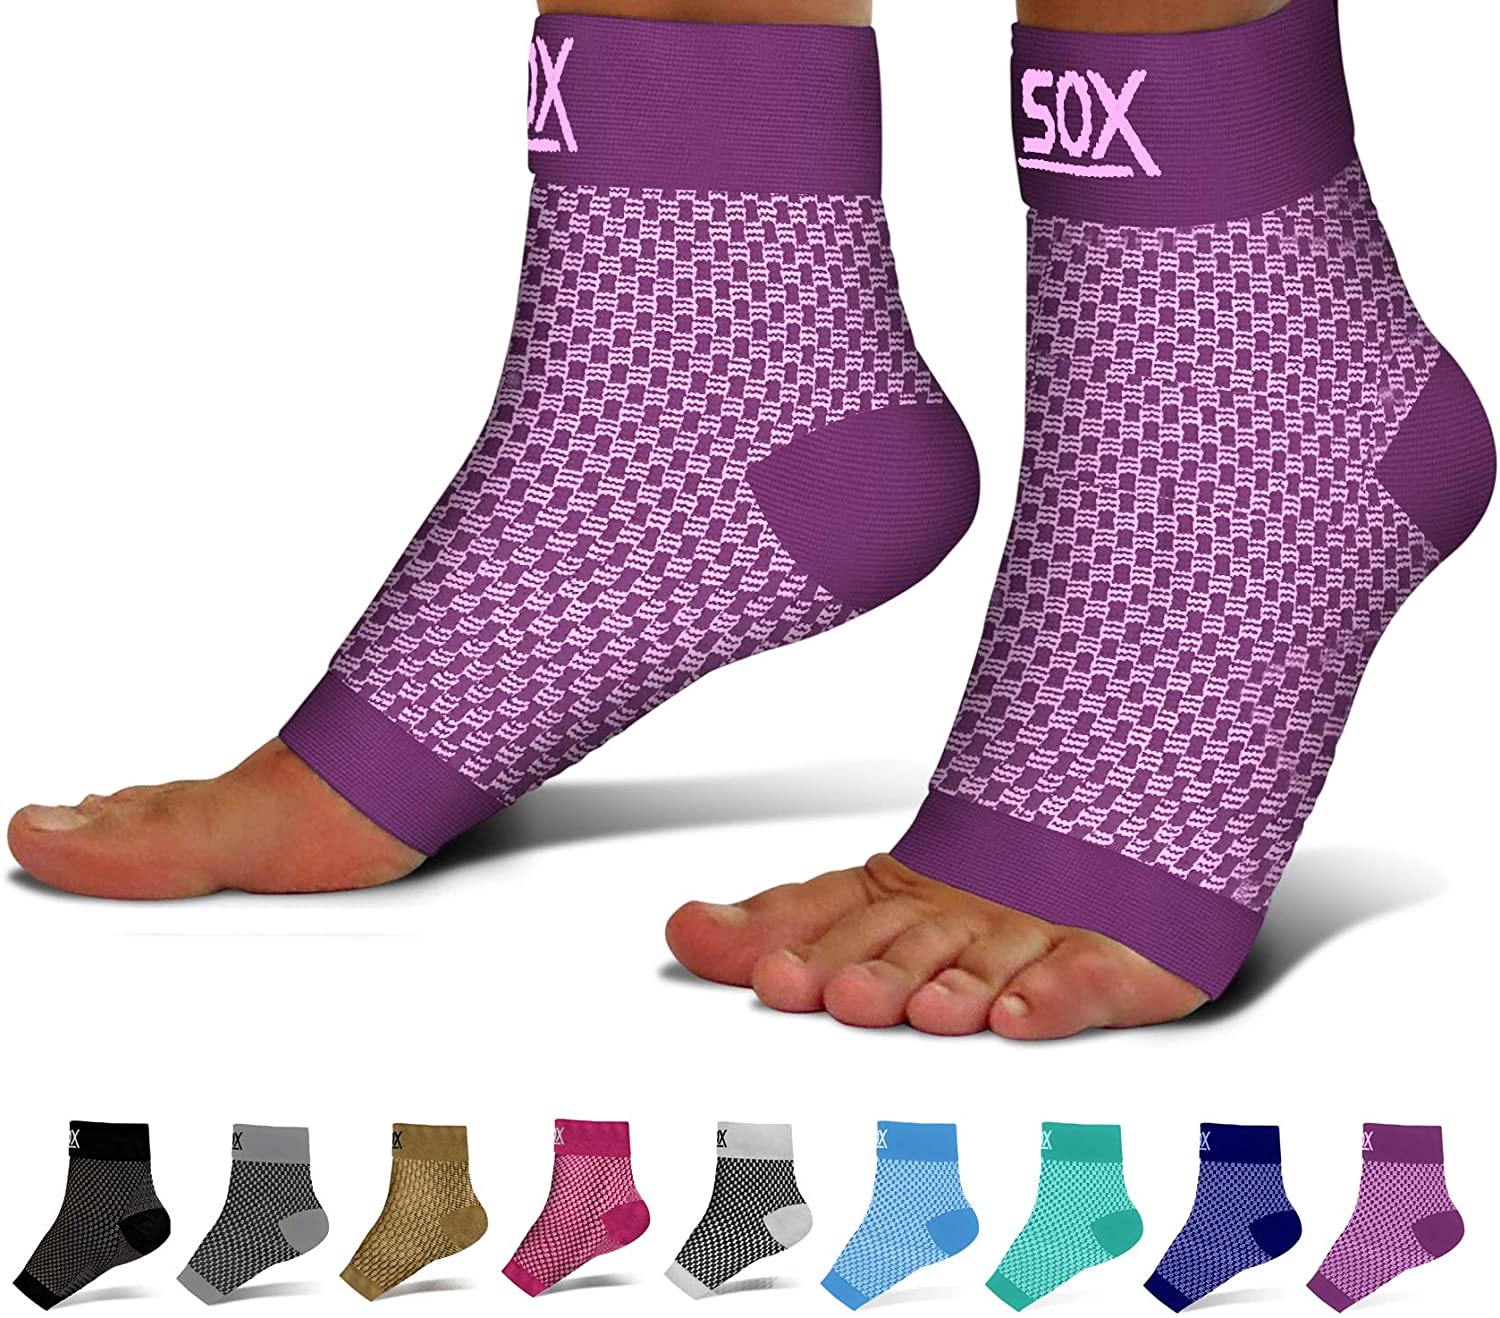 plus size compression socks for edema